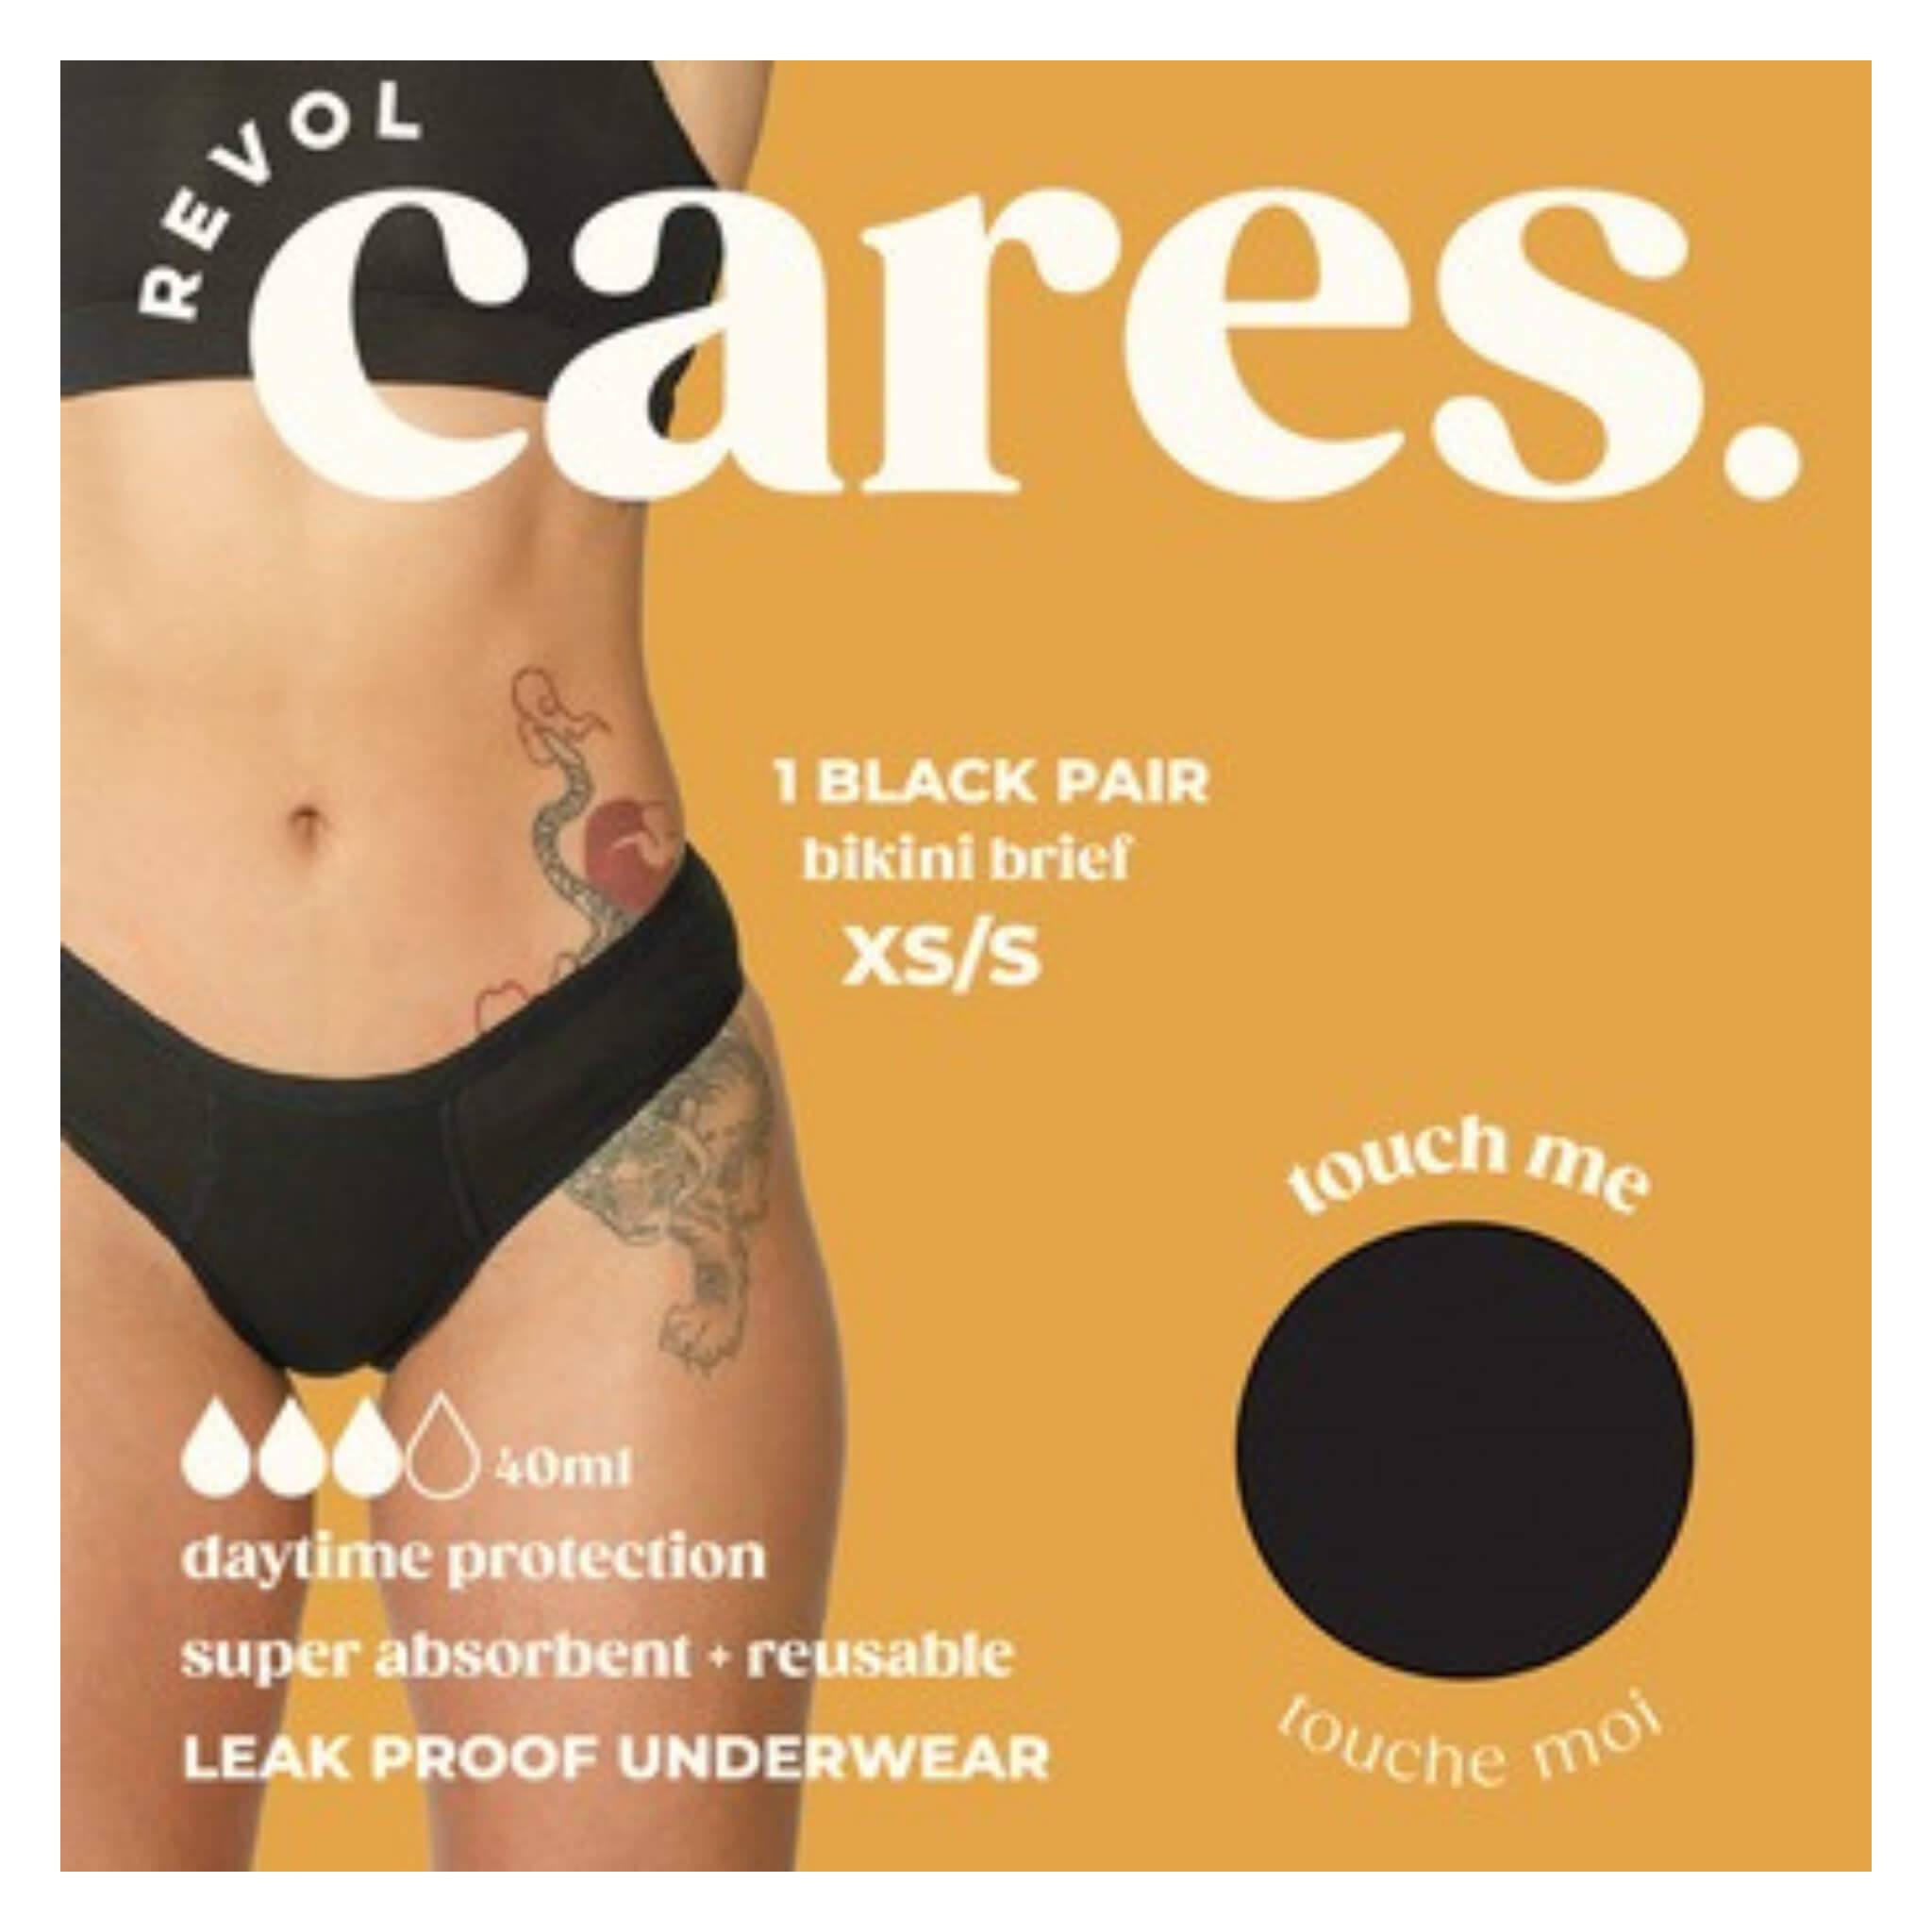 Essentials Women's Cotton Bikini Brief Underwear (Available